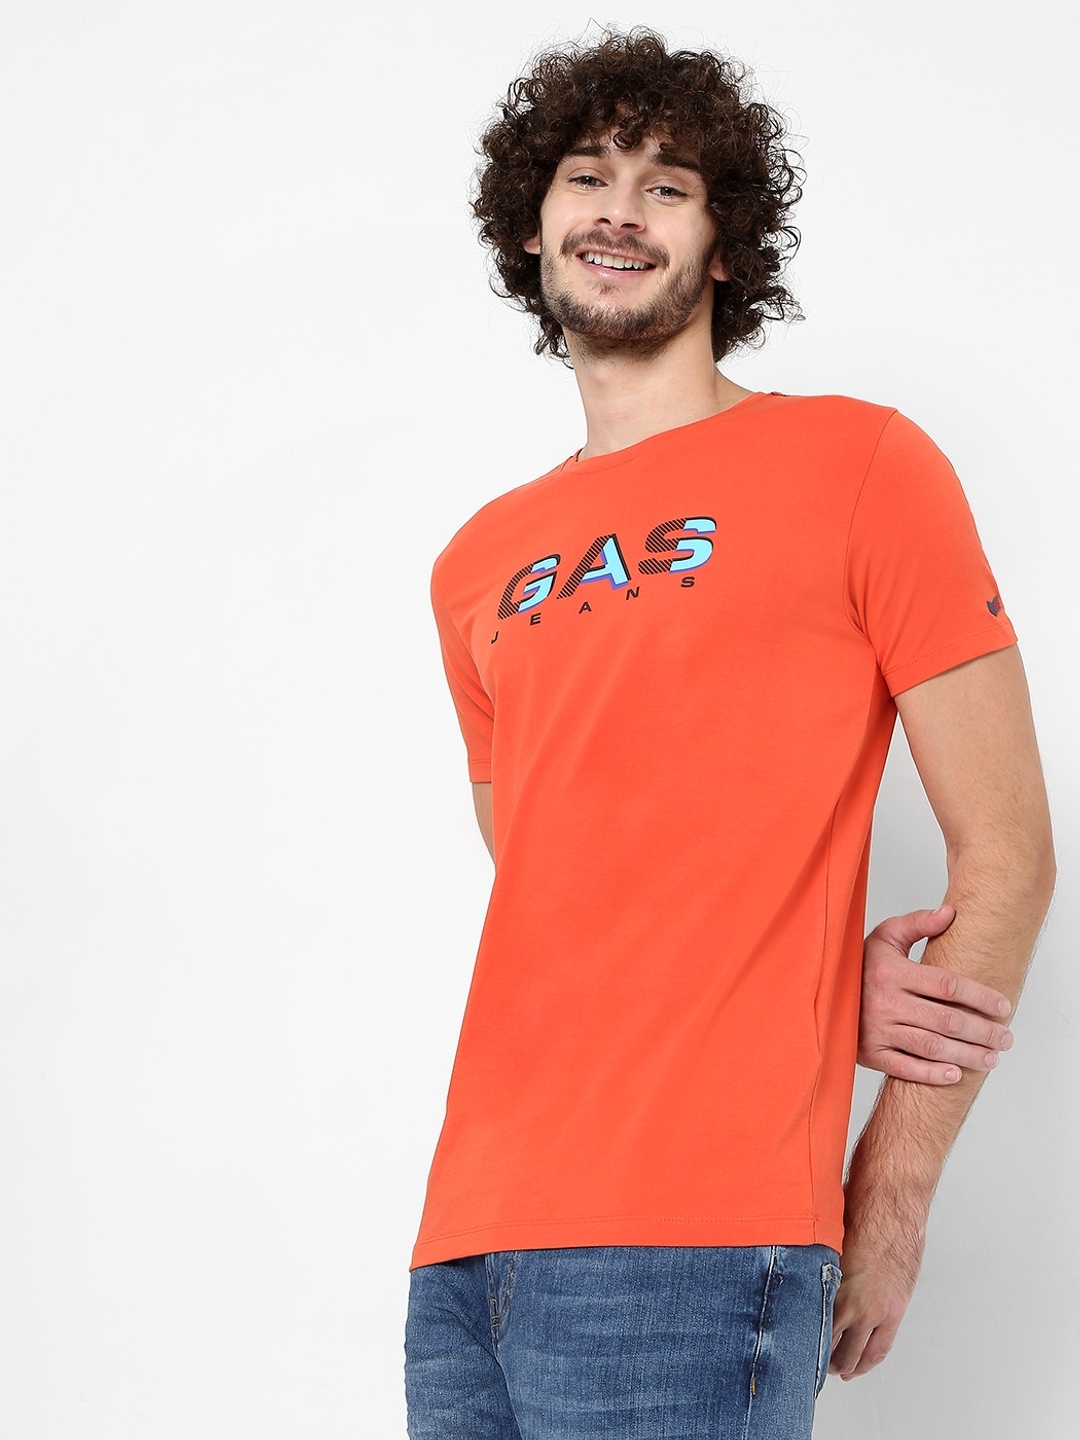 Scuba Space Slim Fit Crew-Neck T-shirt